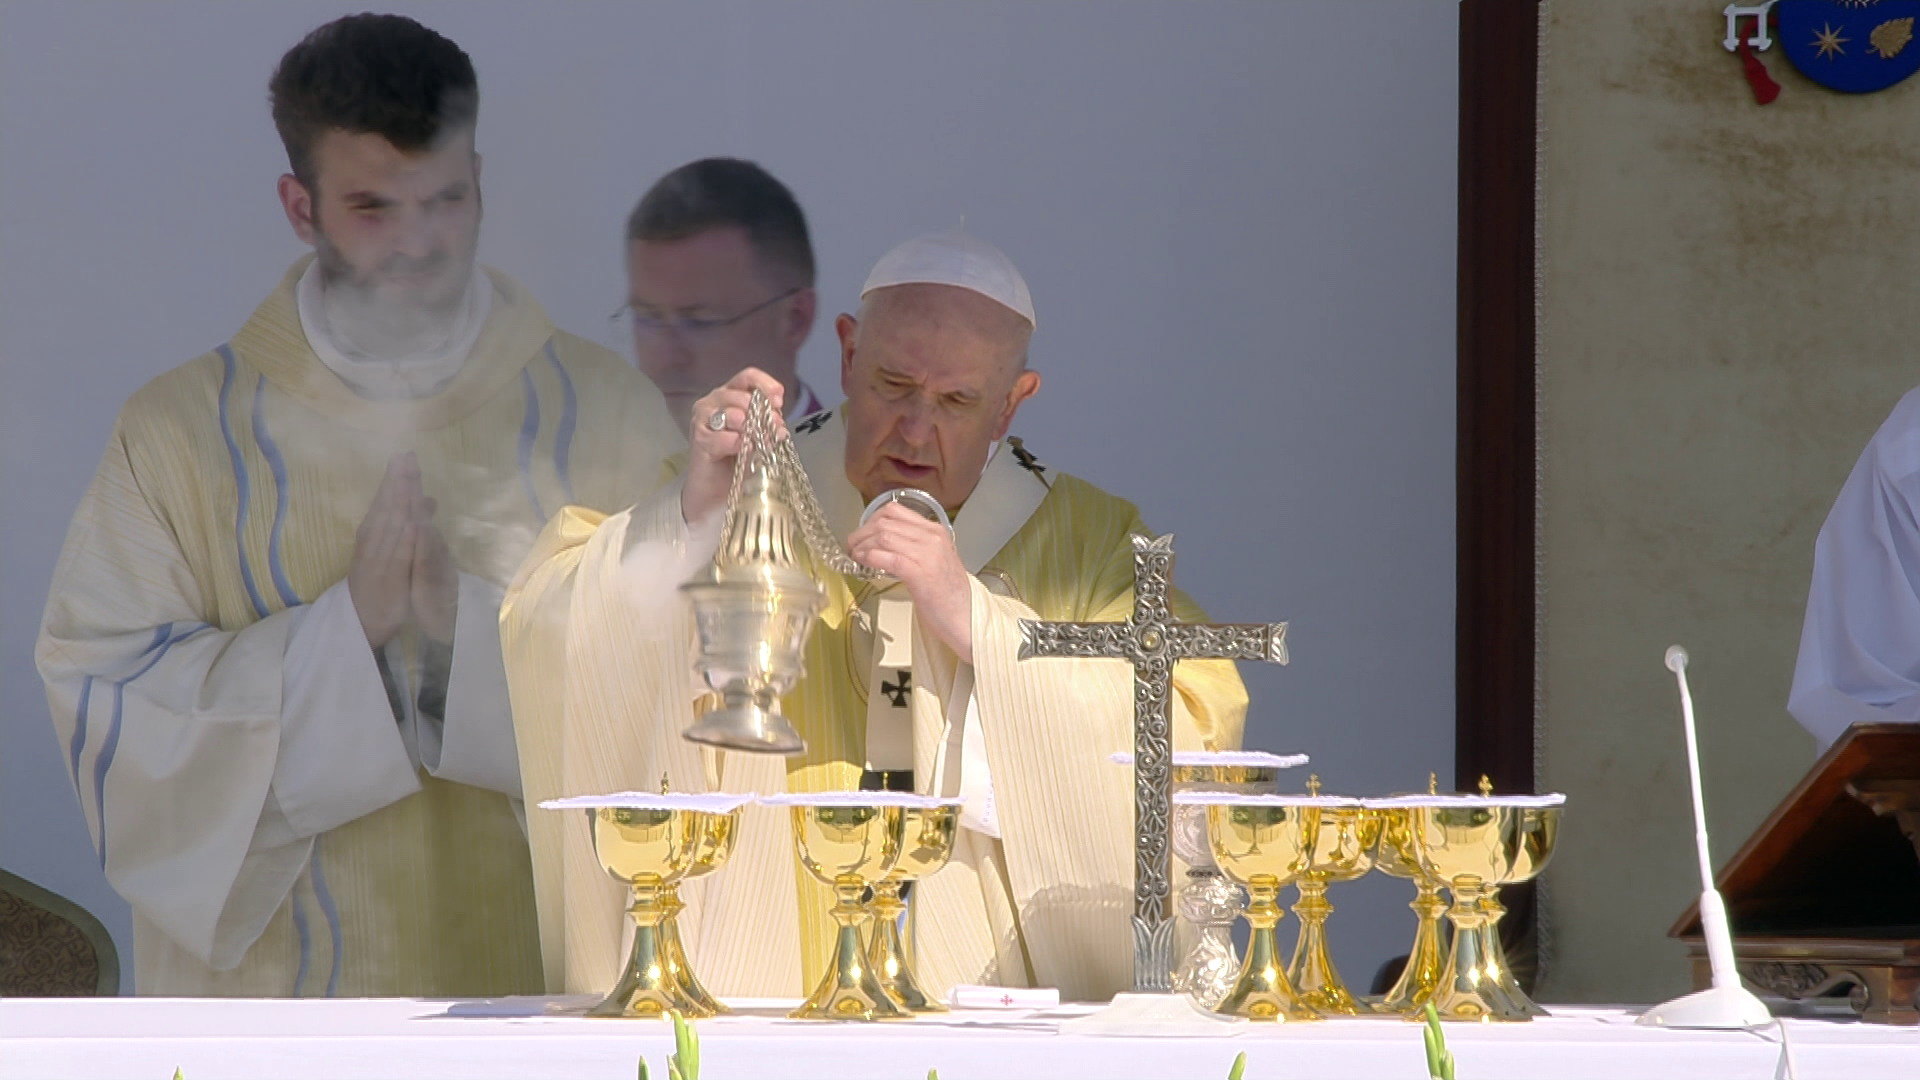 Rendkívüli műsorfolyam: minden egy helyen Ferenc pápa látogatásáról a HírTV-n